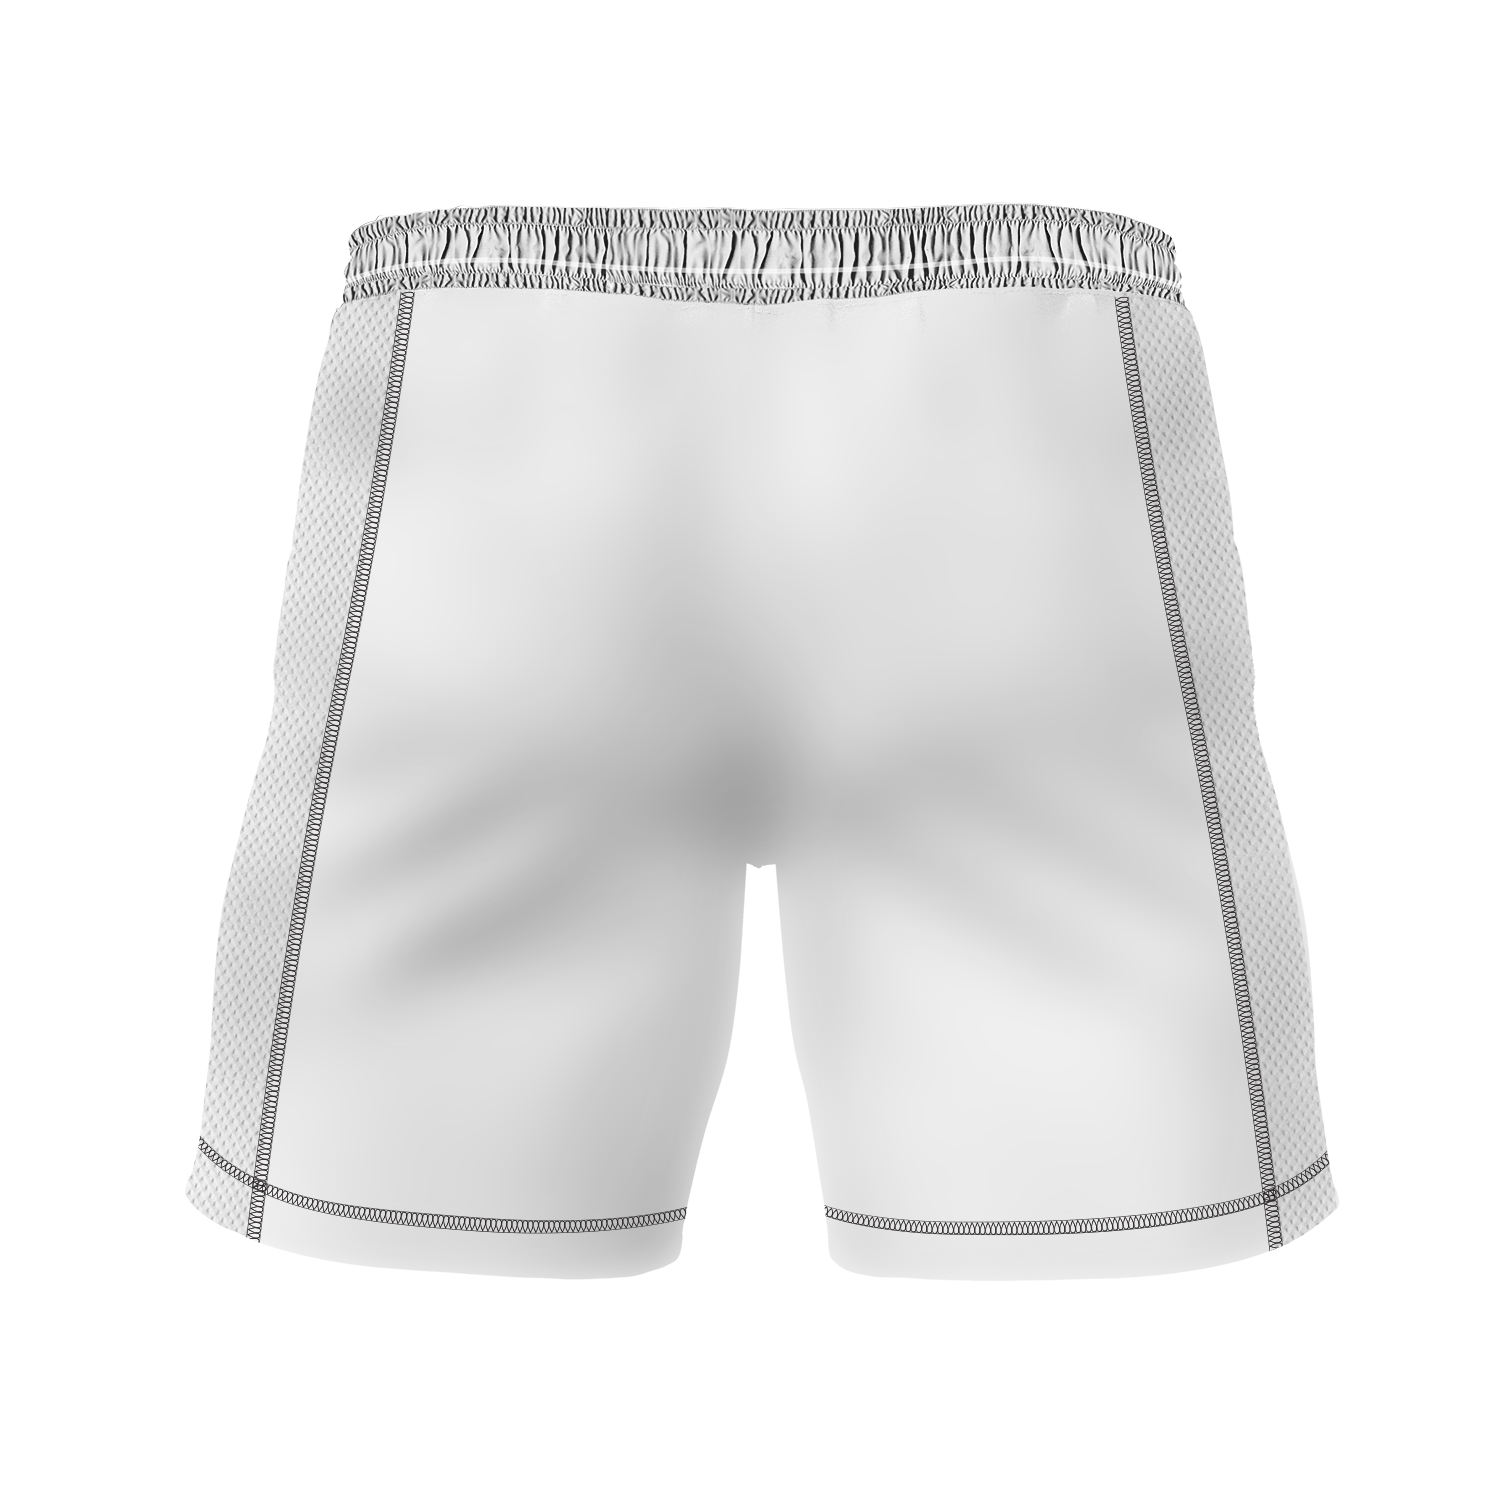 Tsunami JJ men's 7" fight shorts Ranked, white